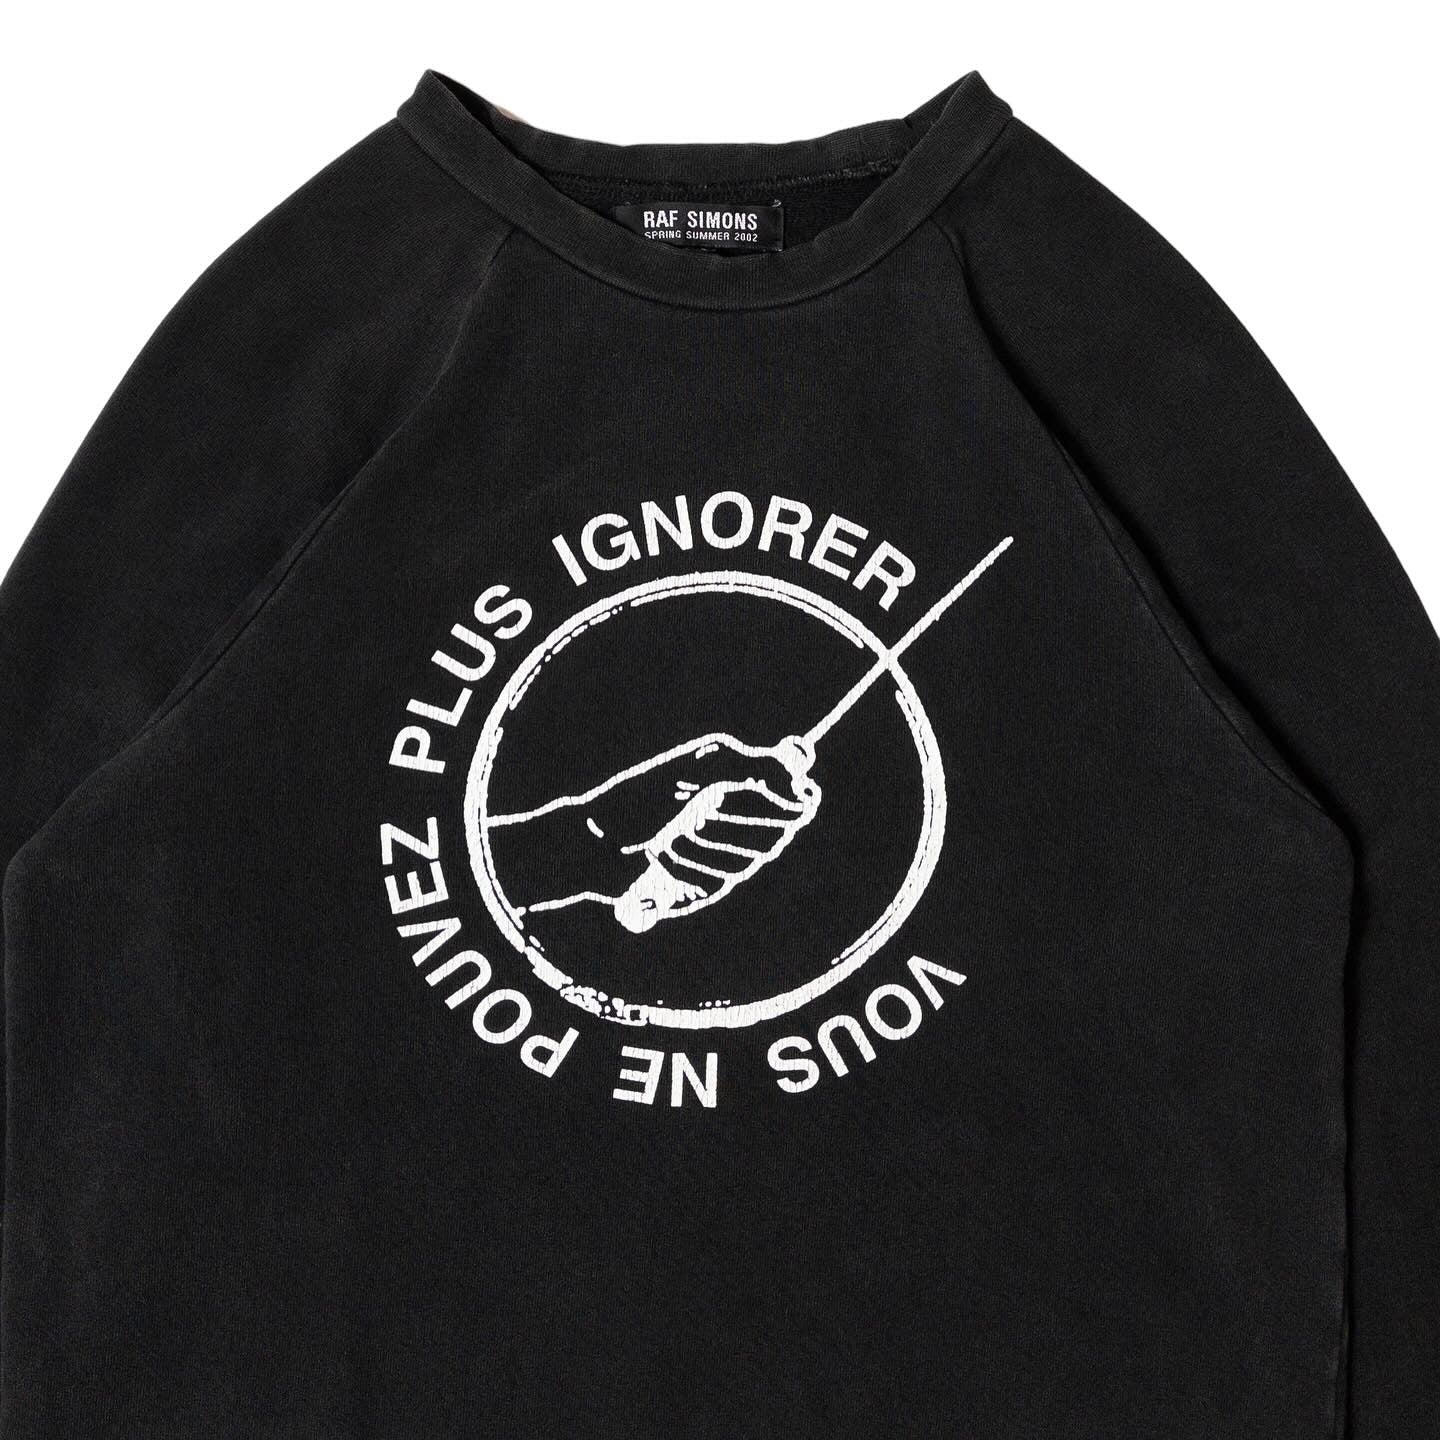 Raf Simons SS02 'Vous Ne Pouvez Plus Ignorer' Raglan Sweatshirt